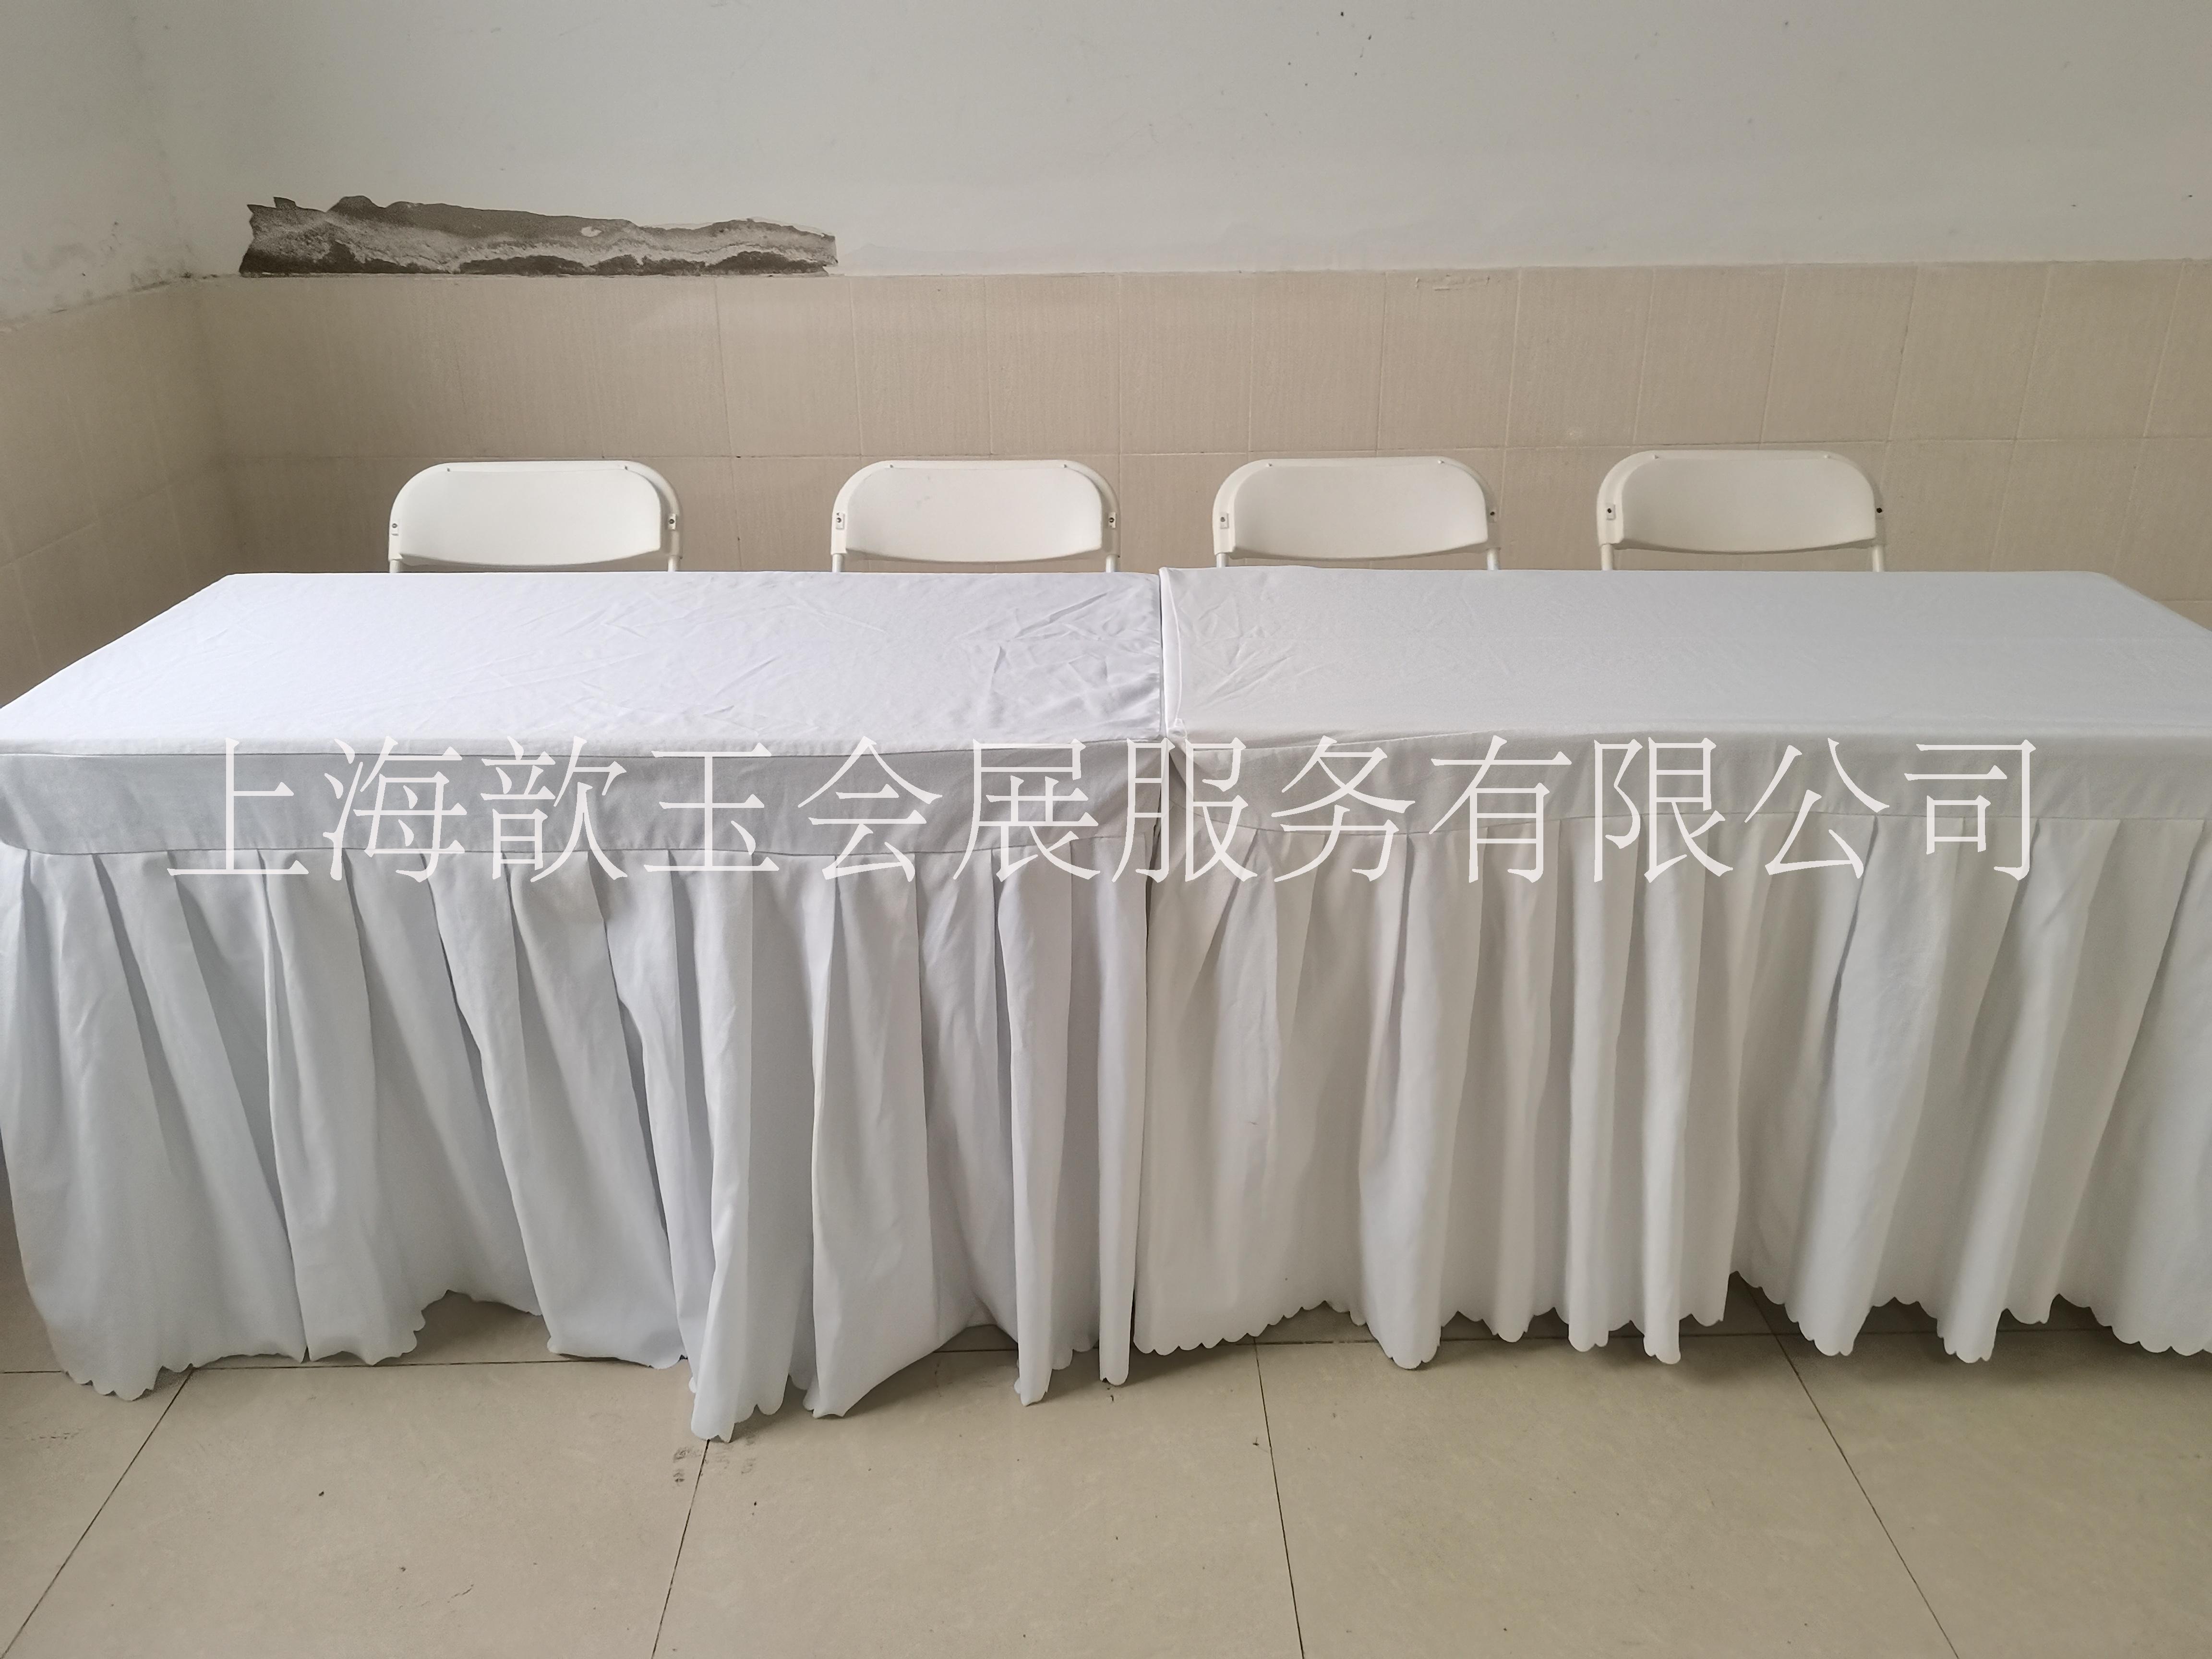 上海折叠桌椅租赁长条桌会议桌出租、IBM桌年会桌椅出租